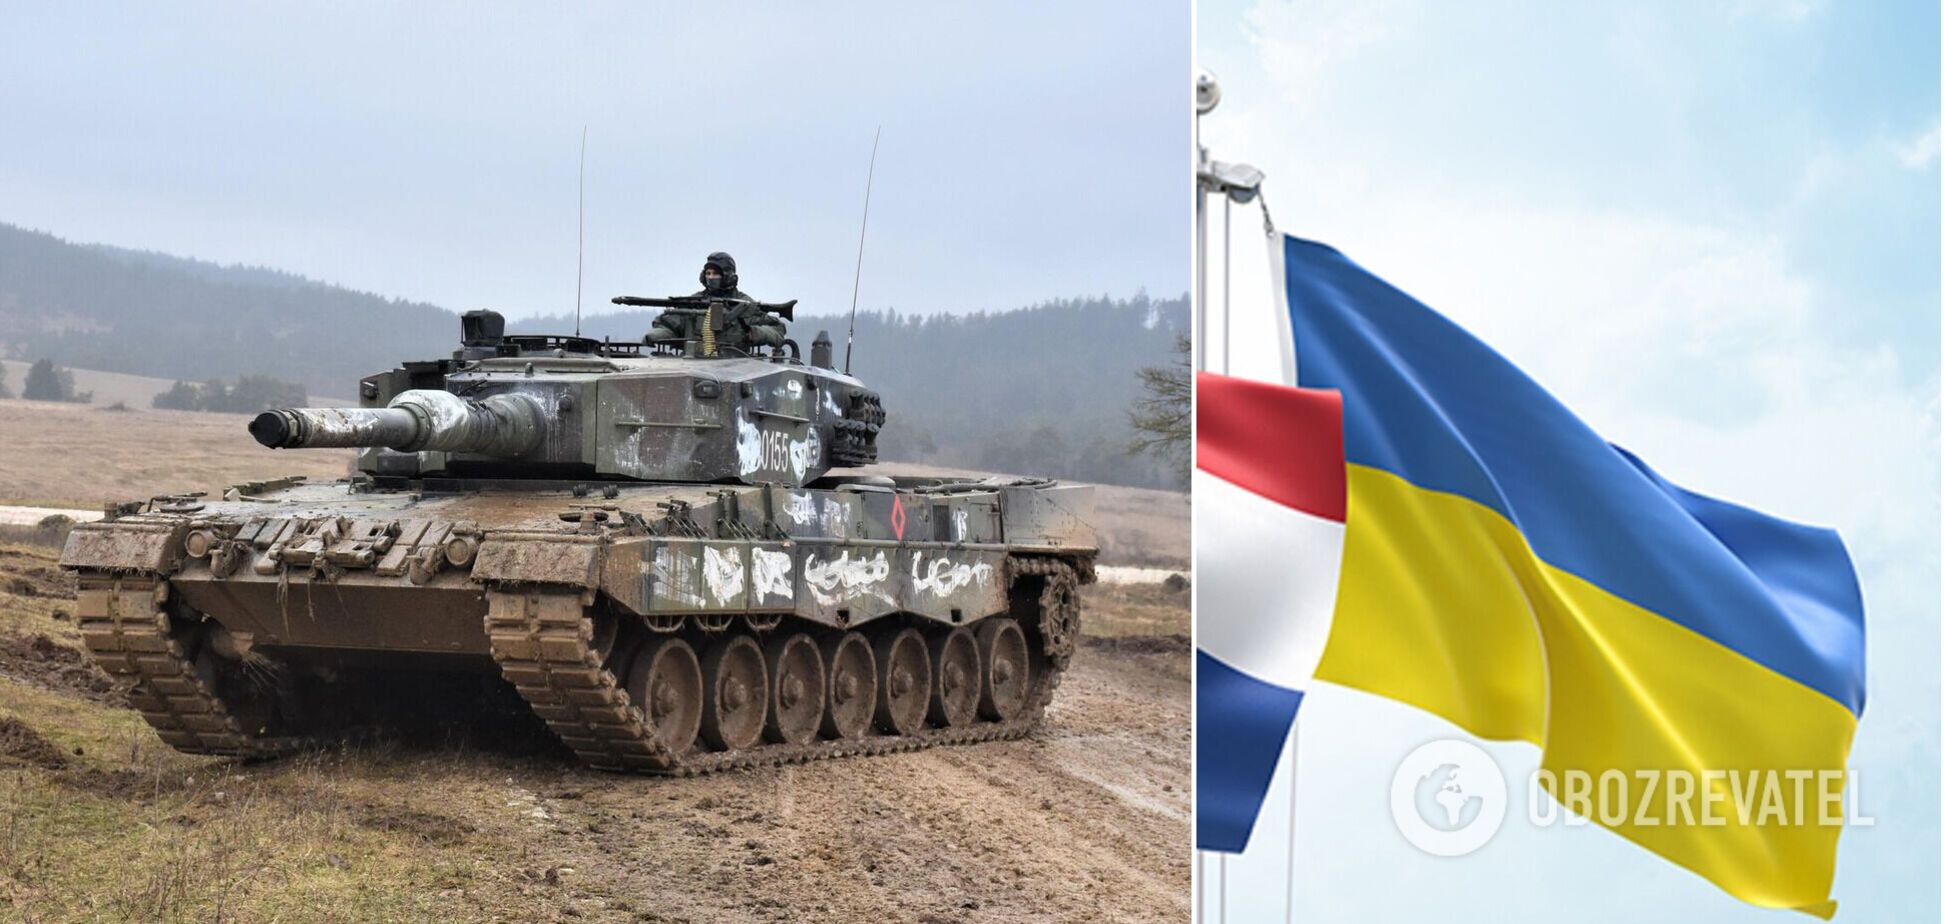 Нидерланды хотят выкупить у Германии 18 танков Leopard 2 для Украины, — премьер-министр Рютте